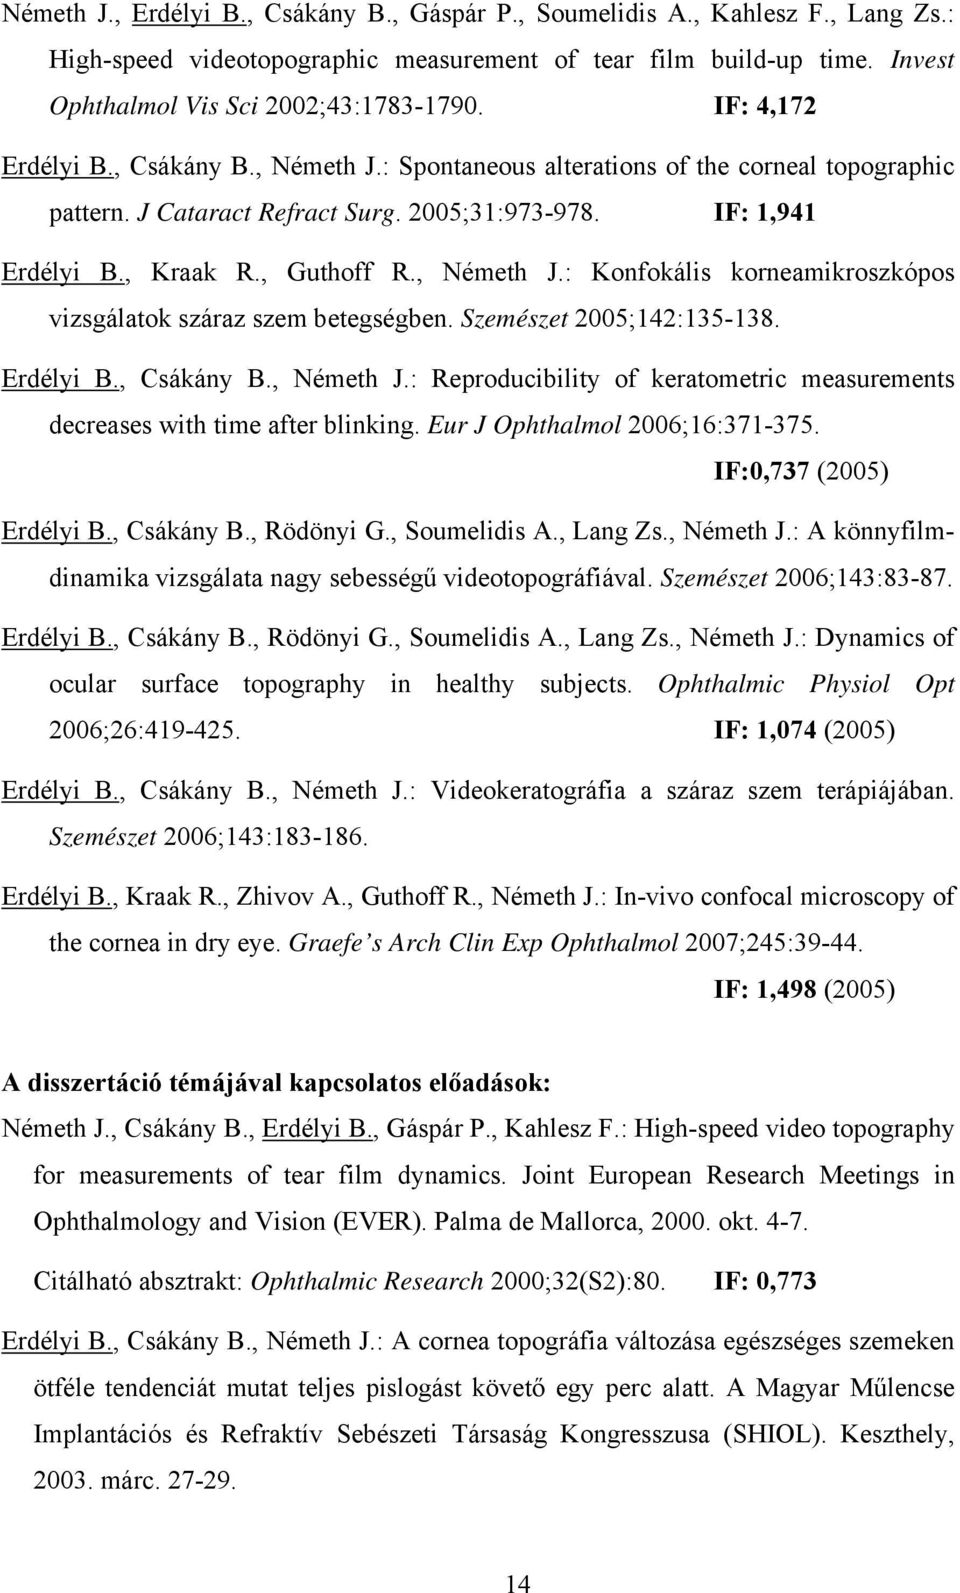 Szemészet 2005;142:135-138. Erdélyi B., Csákány B., Németh J.: Reproducibility of keratometric measurements decreases with time after blinking. Eur J Ophthalmol 2006;16:371-375.